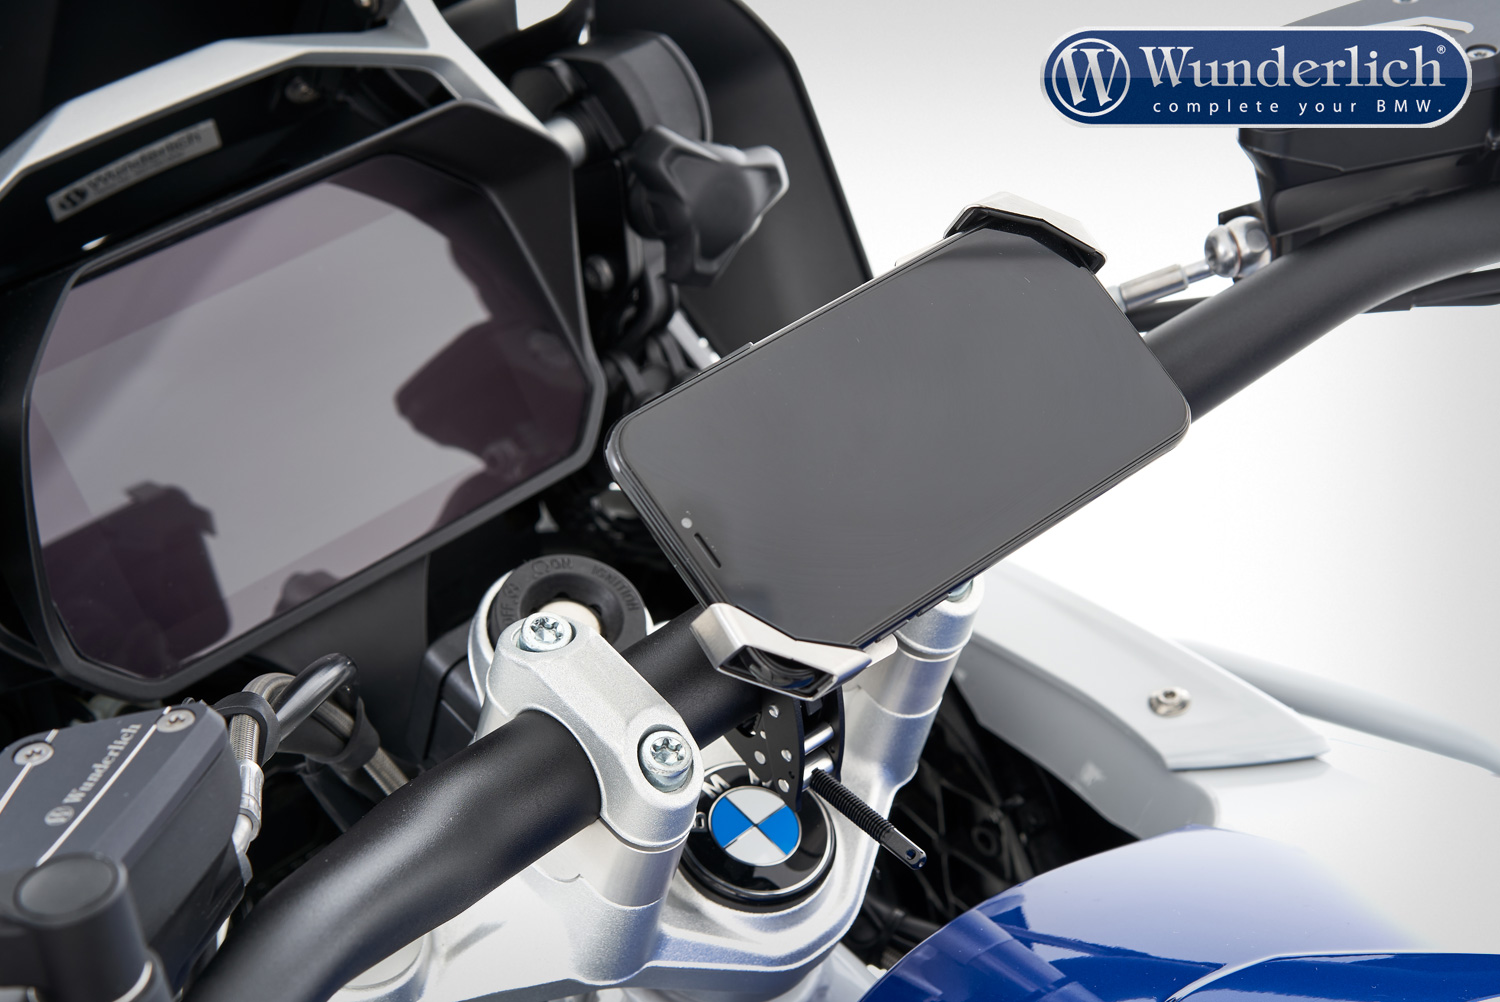 KWG - Soporte para celular para motocicleta